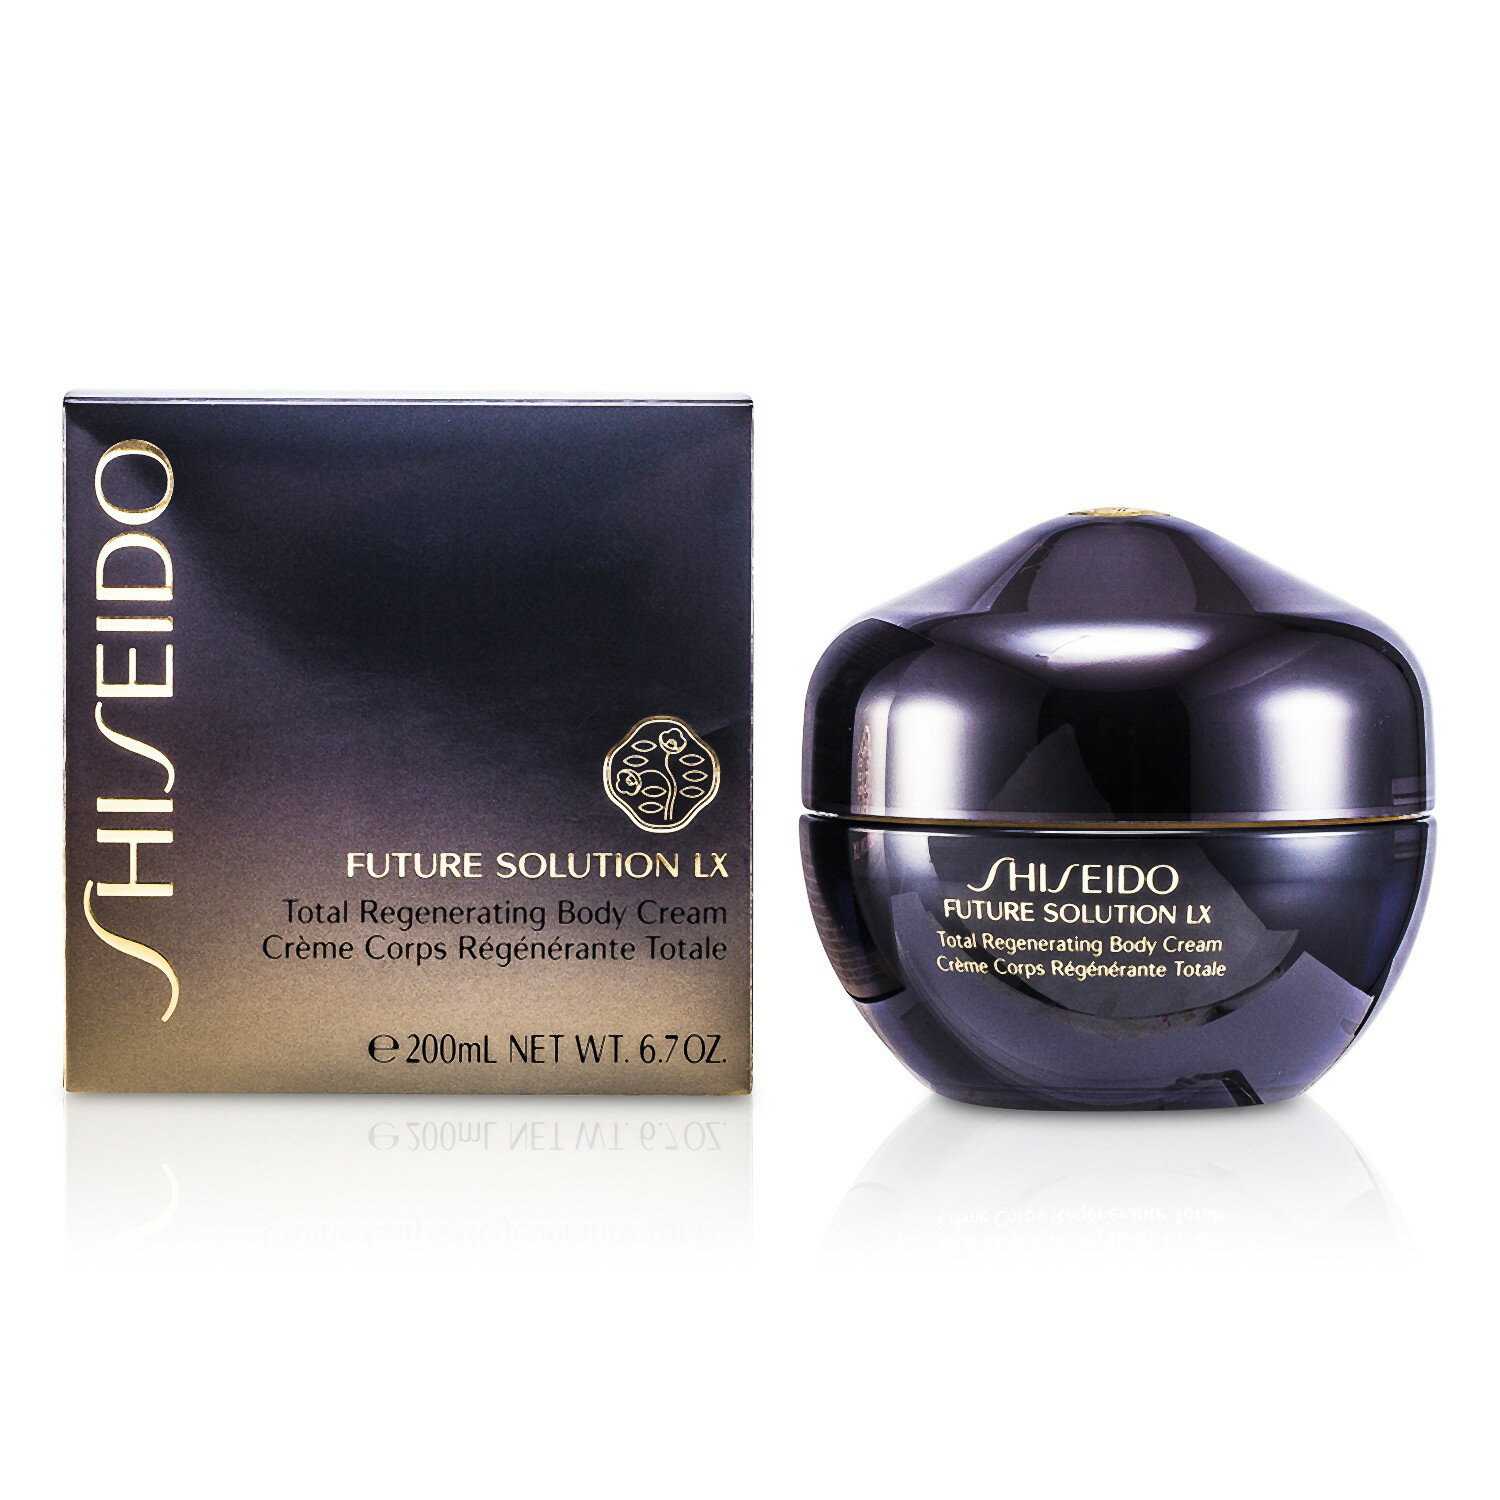 資生堂 Shiseido - 時空琉璃LX御藏美體霜 Future Solution LX Total Regenerating Body Cream